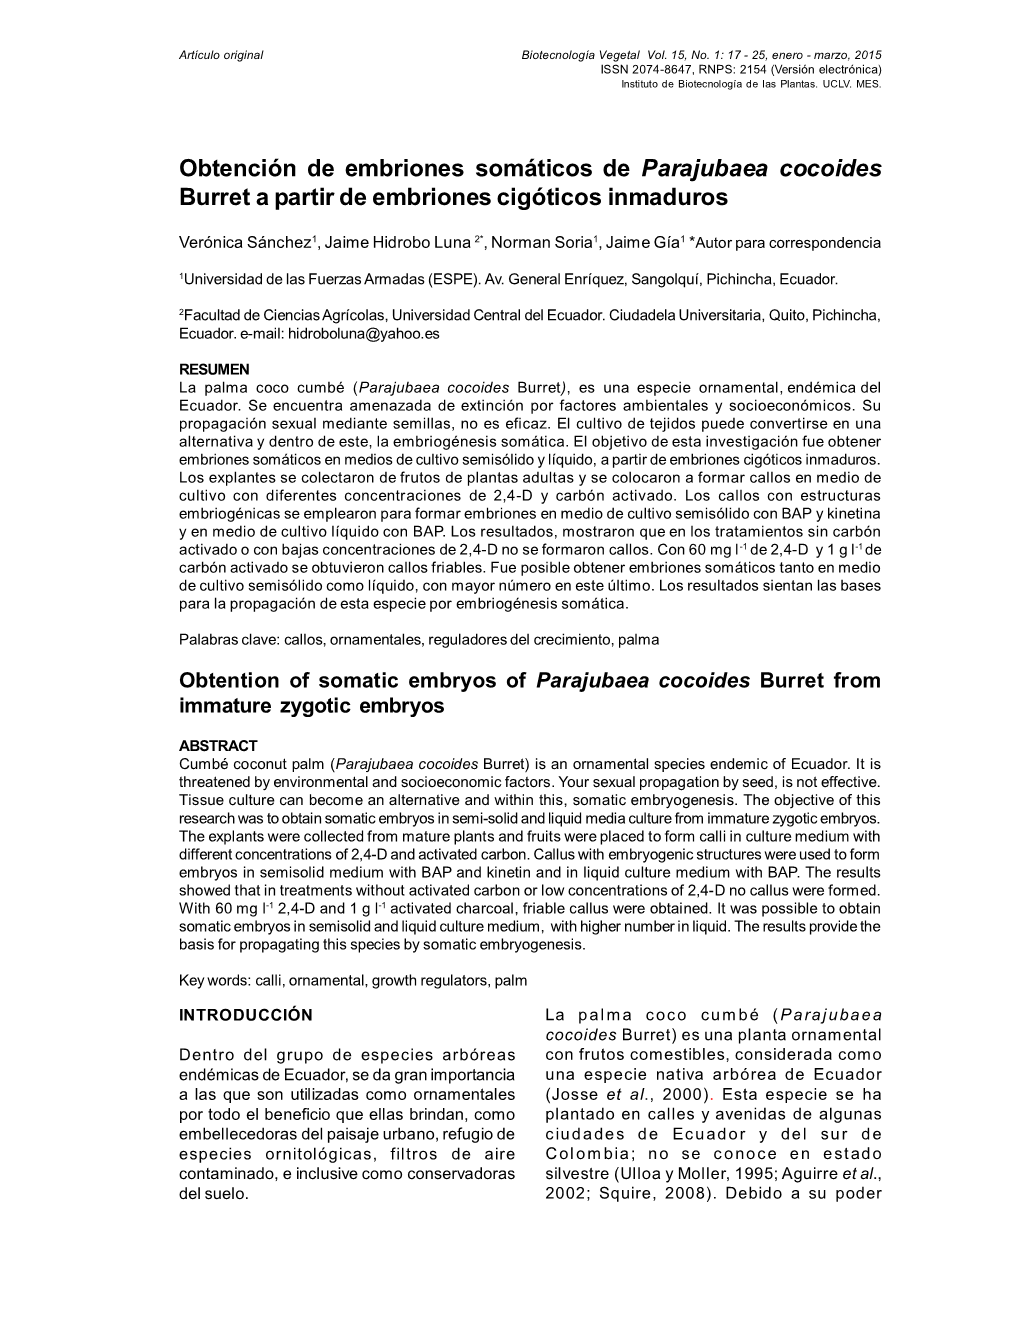 Obtención De Embriones Somáticos De Parajubaea Cocoides Burret a Partir De Embriones Cigóticos Inmaduros